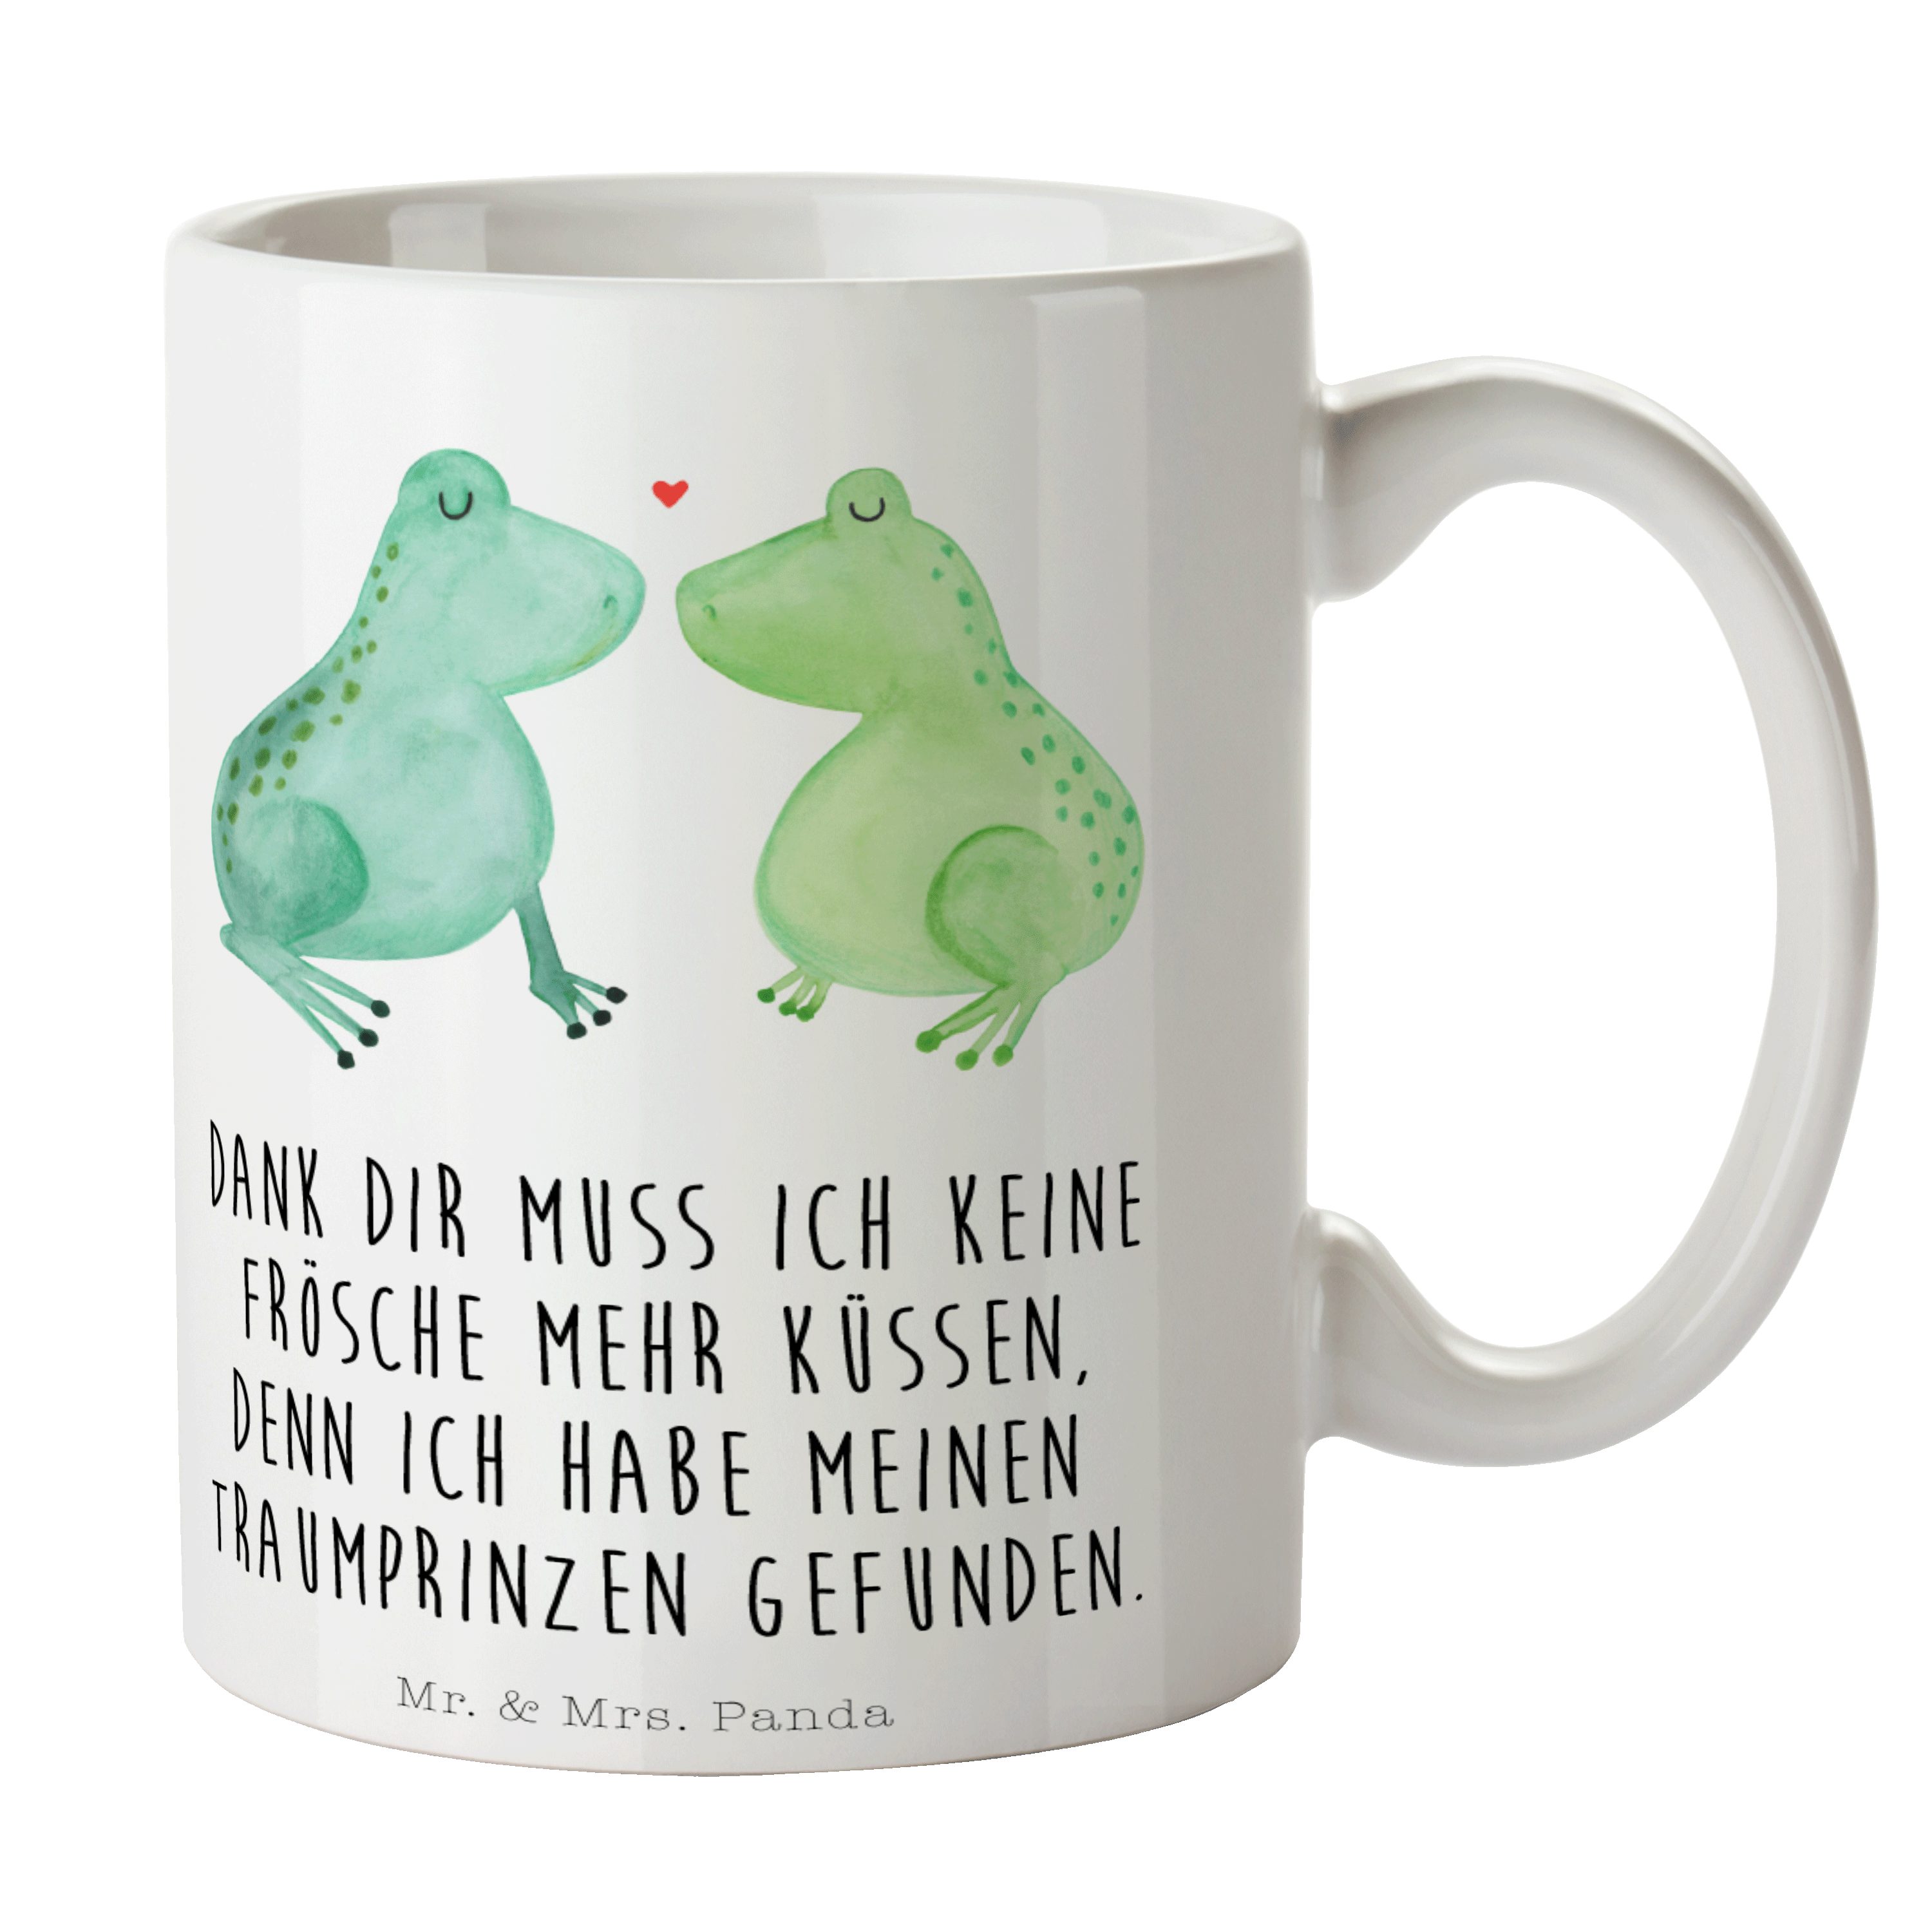 Hocheitstag, Jahrestag, Mr. & - Frosch Verlo, küssen, Keramik - Tasse Geschenk, Liebe Mrs. Panda Weiß